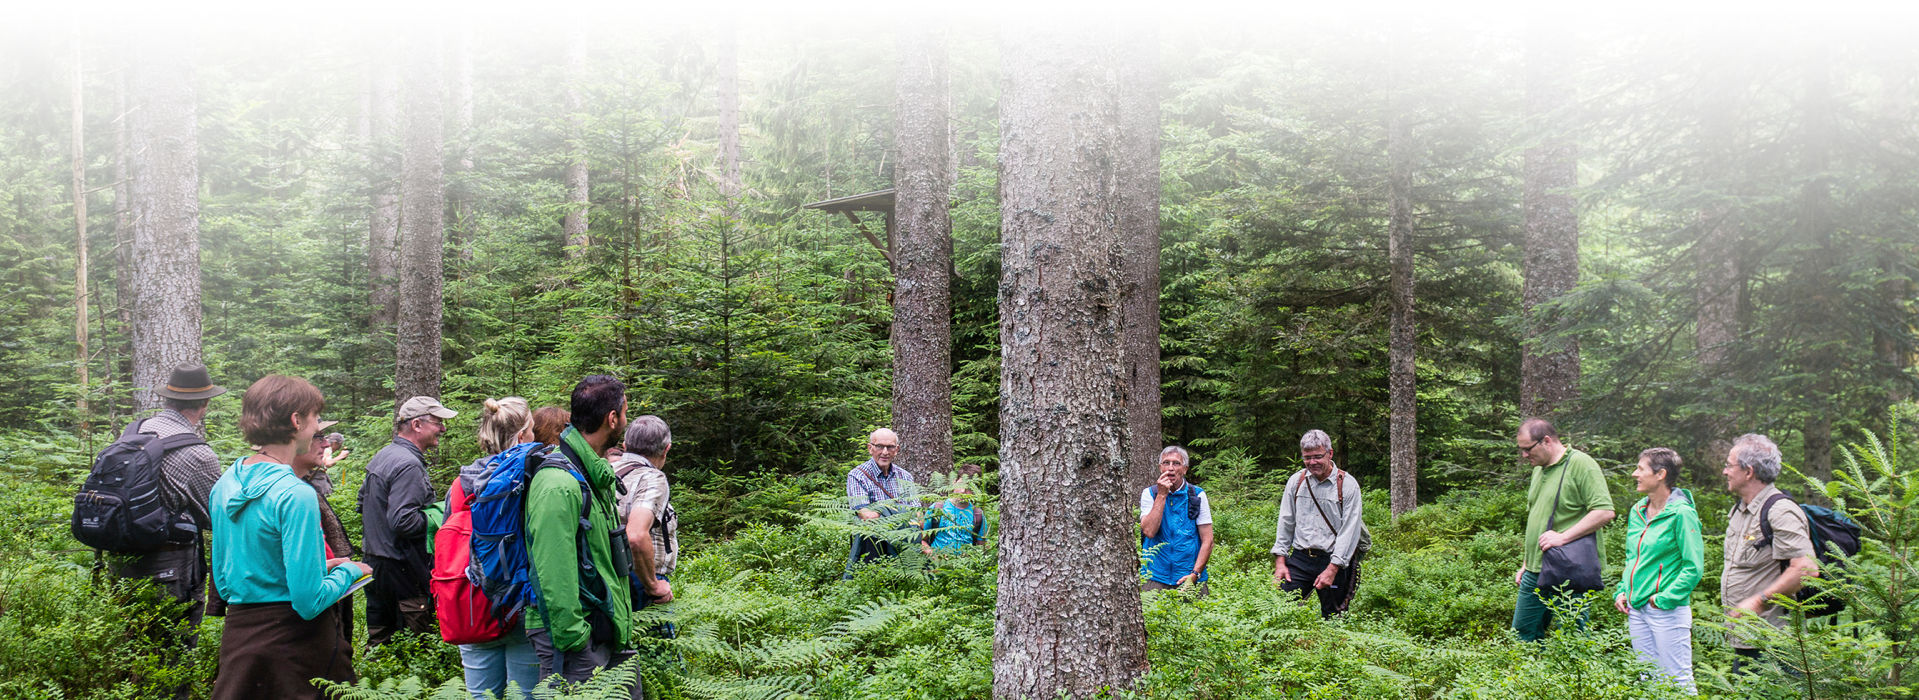 Eine Gruppe Menschen, alles Erwachsene, steht in Outdoor- und Wanderkleidung im Kreis um einen großen Nadelbaum im Wald inmitten fast hüfthohem Farn auf dem Boden. Einer der Männer scheint etwas zu erklären. 